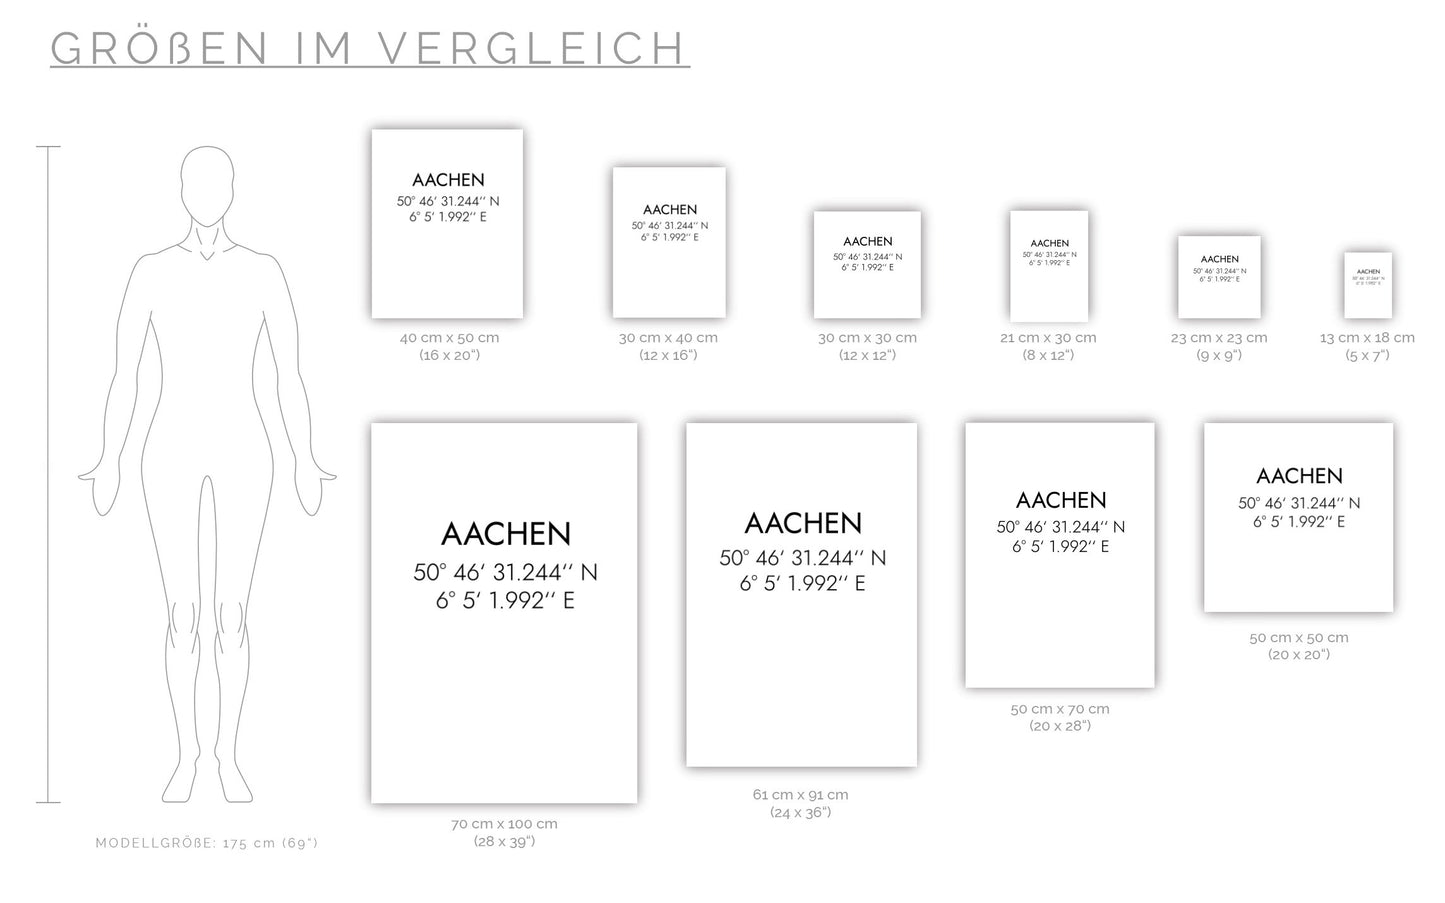 Poster Aachen Koordinaten #1